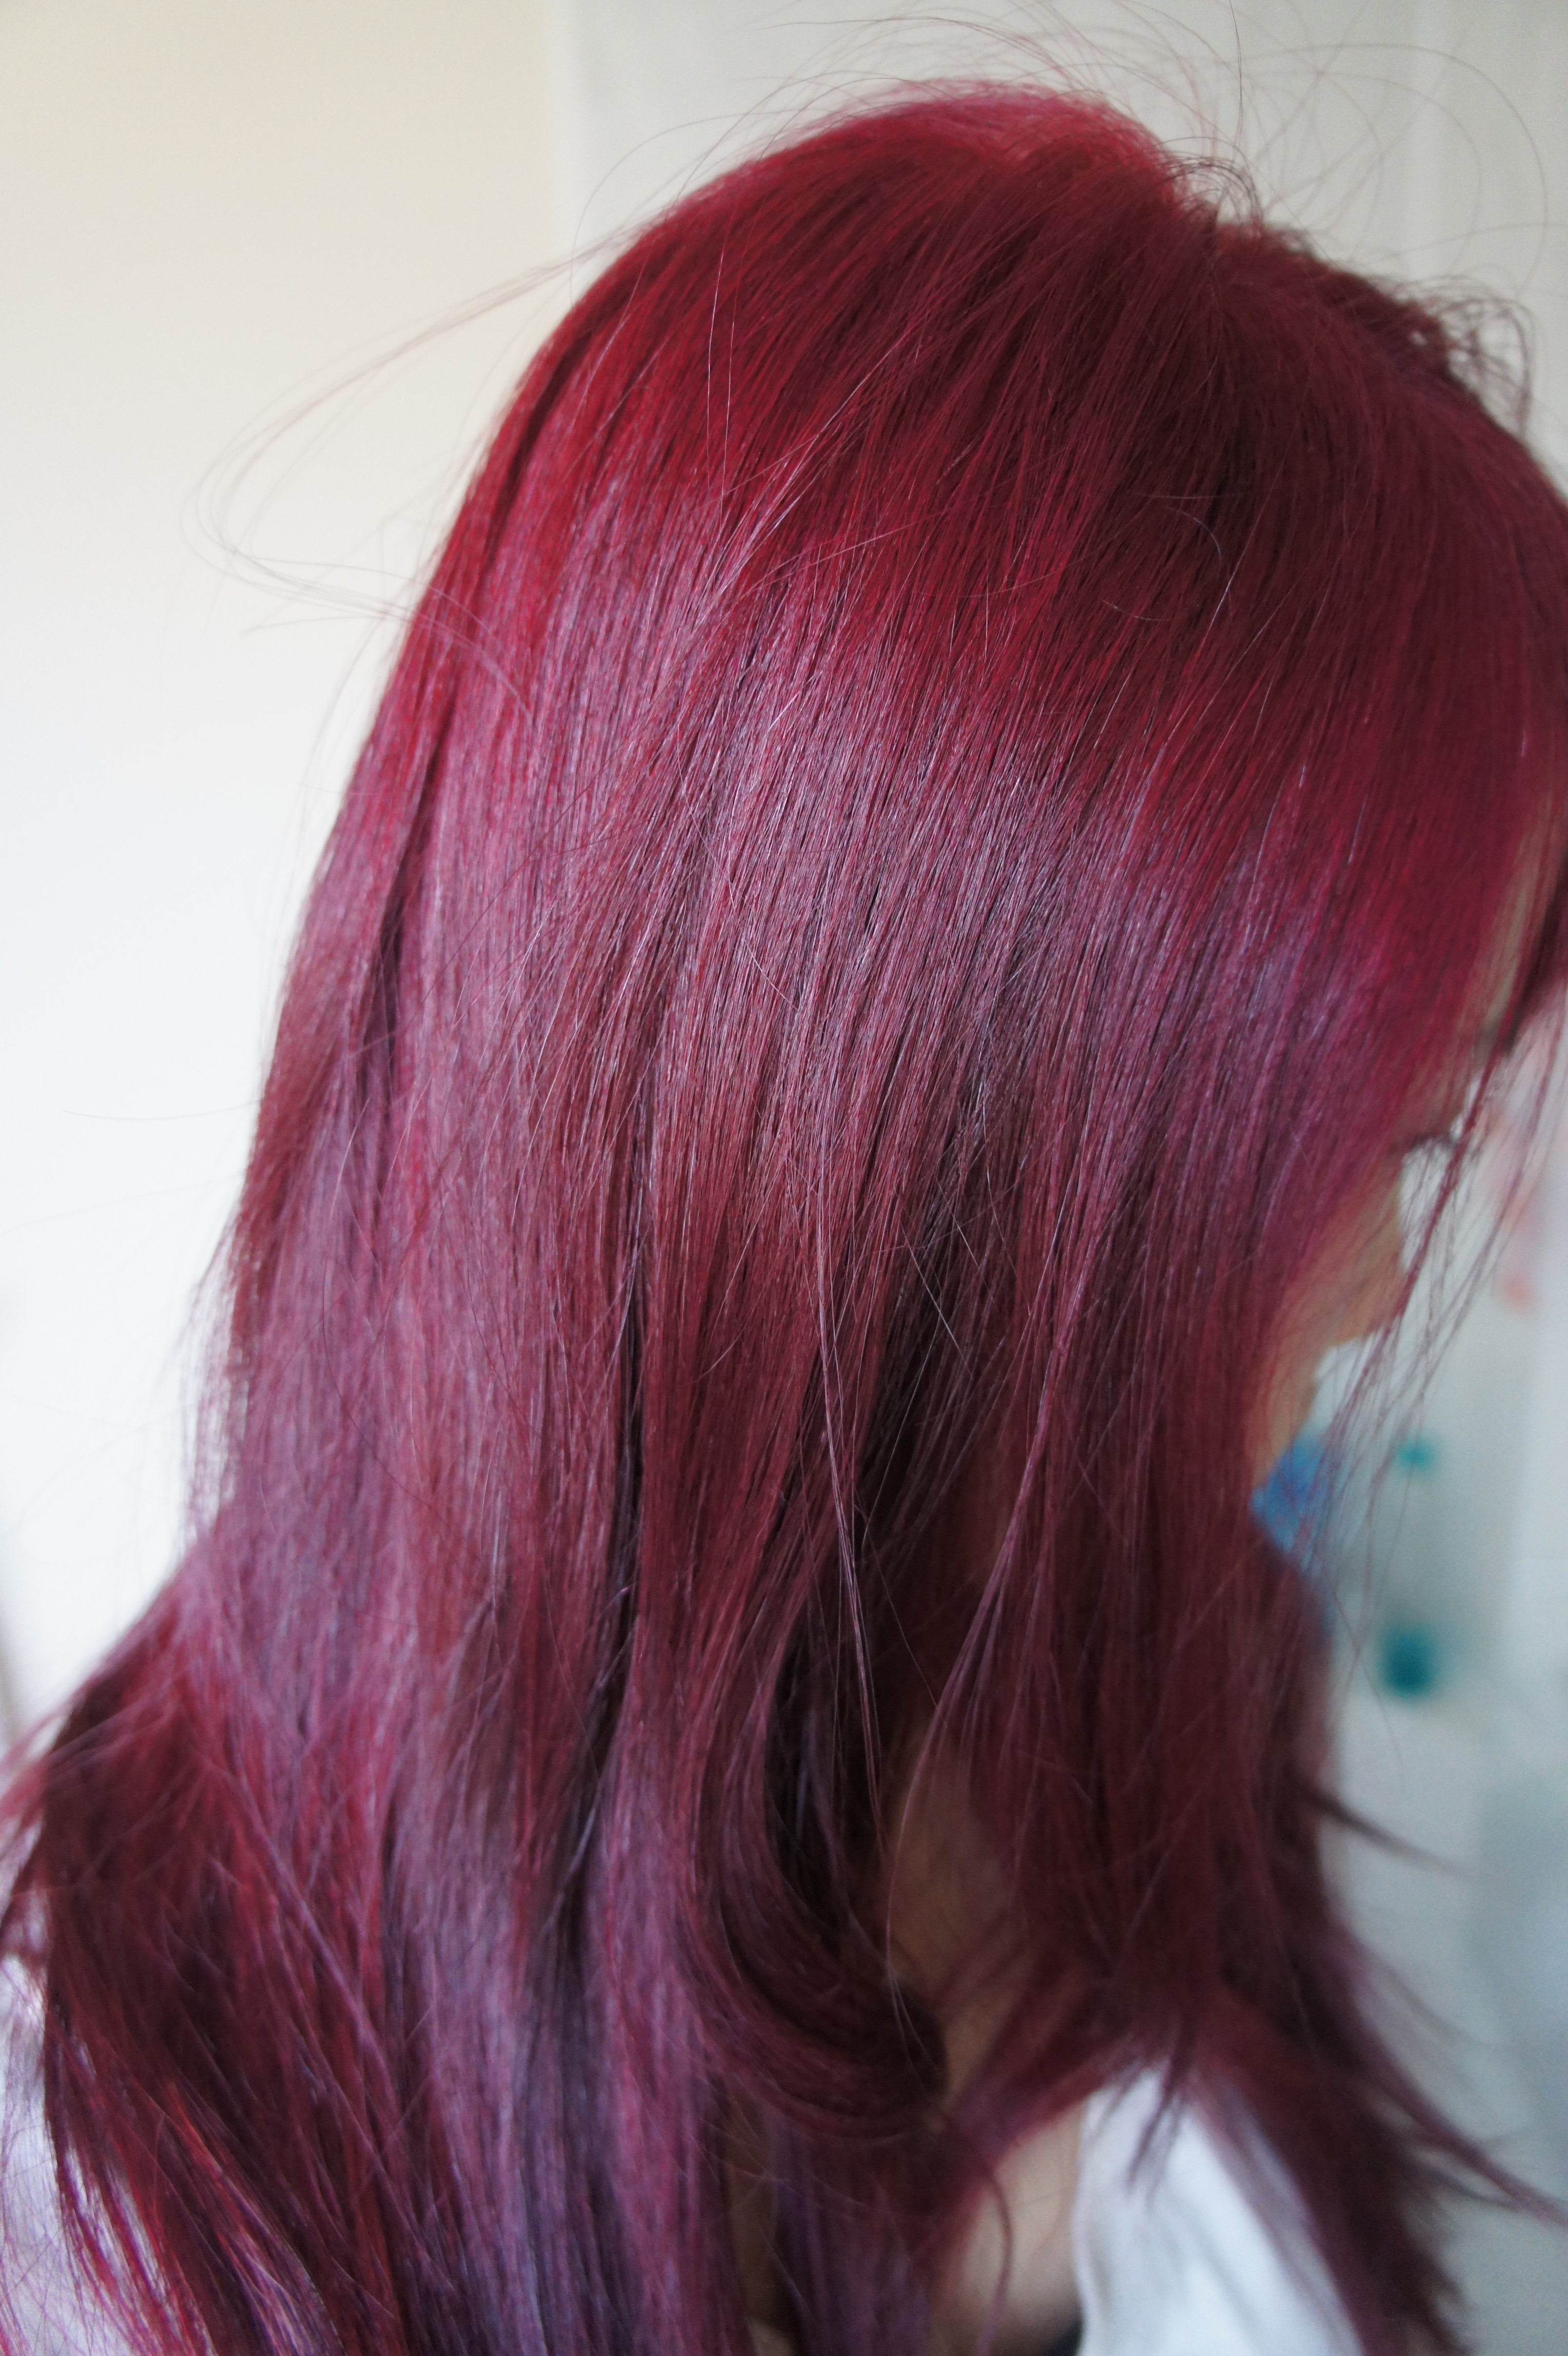 Seeing Red At Home DIY Hair Colouring KAKA BEAUTY BLOG